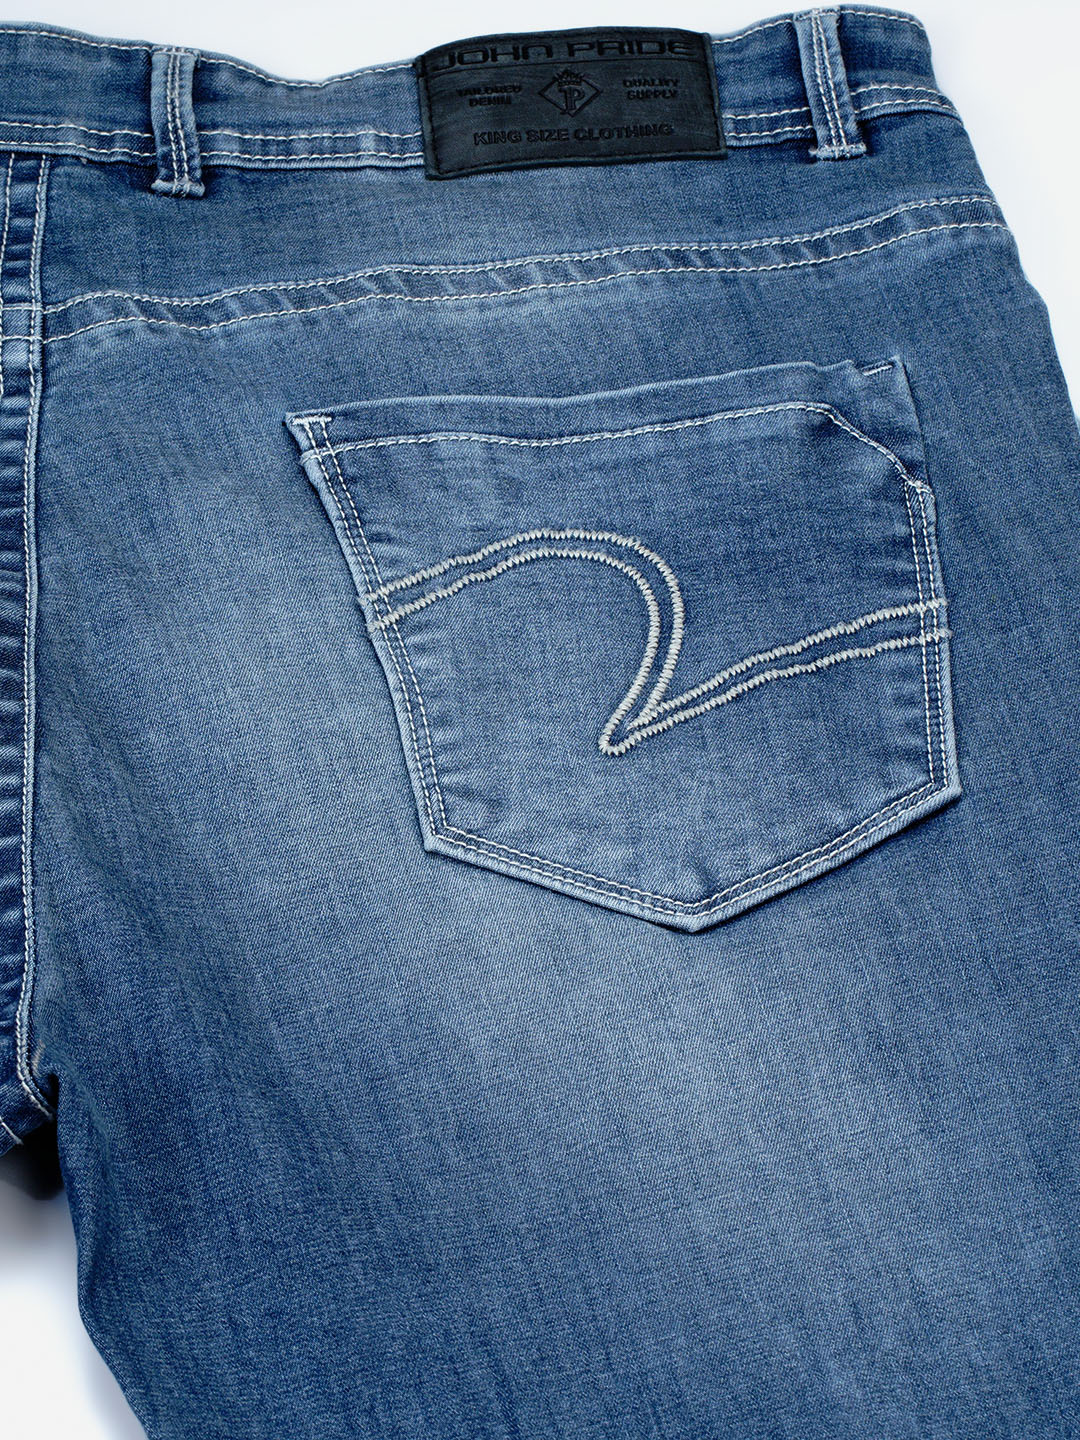 bottomwear/jeans/JPJ12117/jpj12117-2.jpg